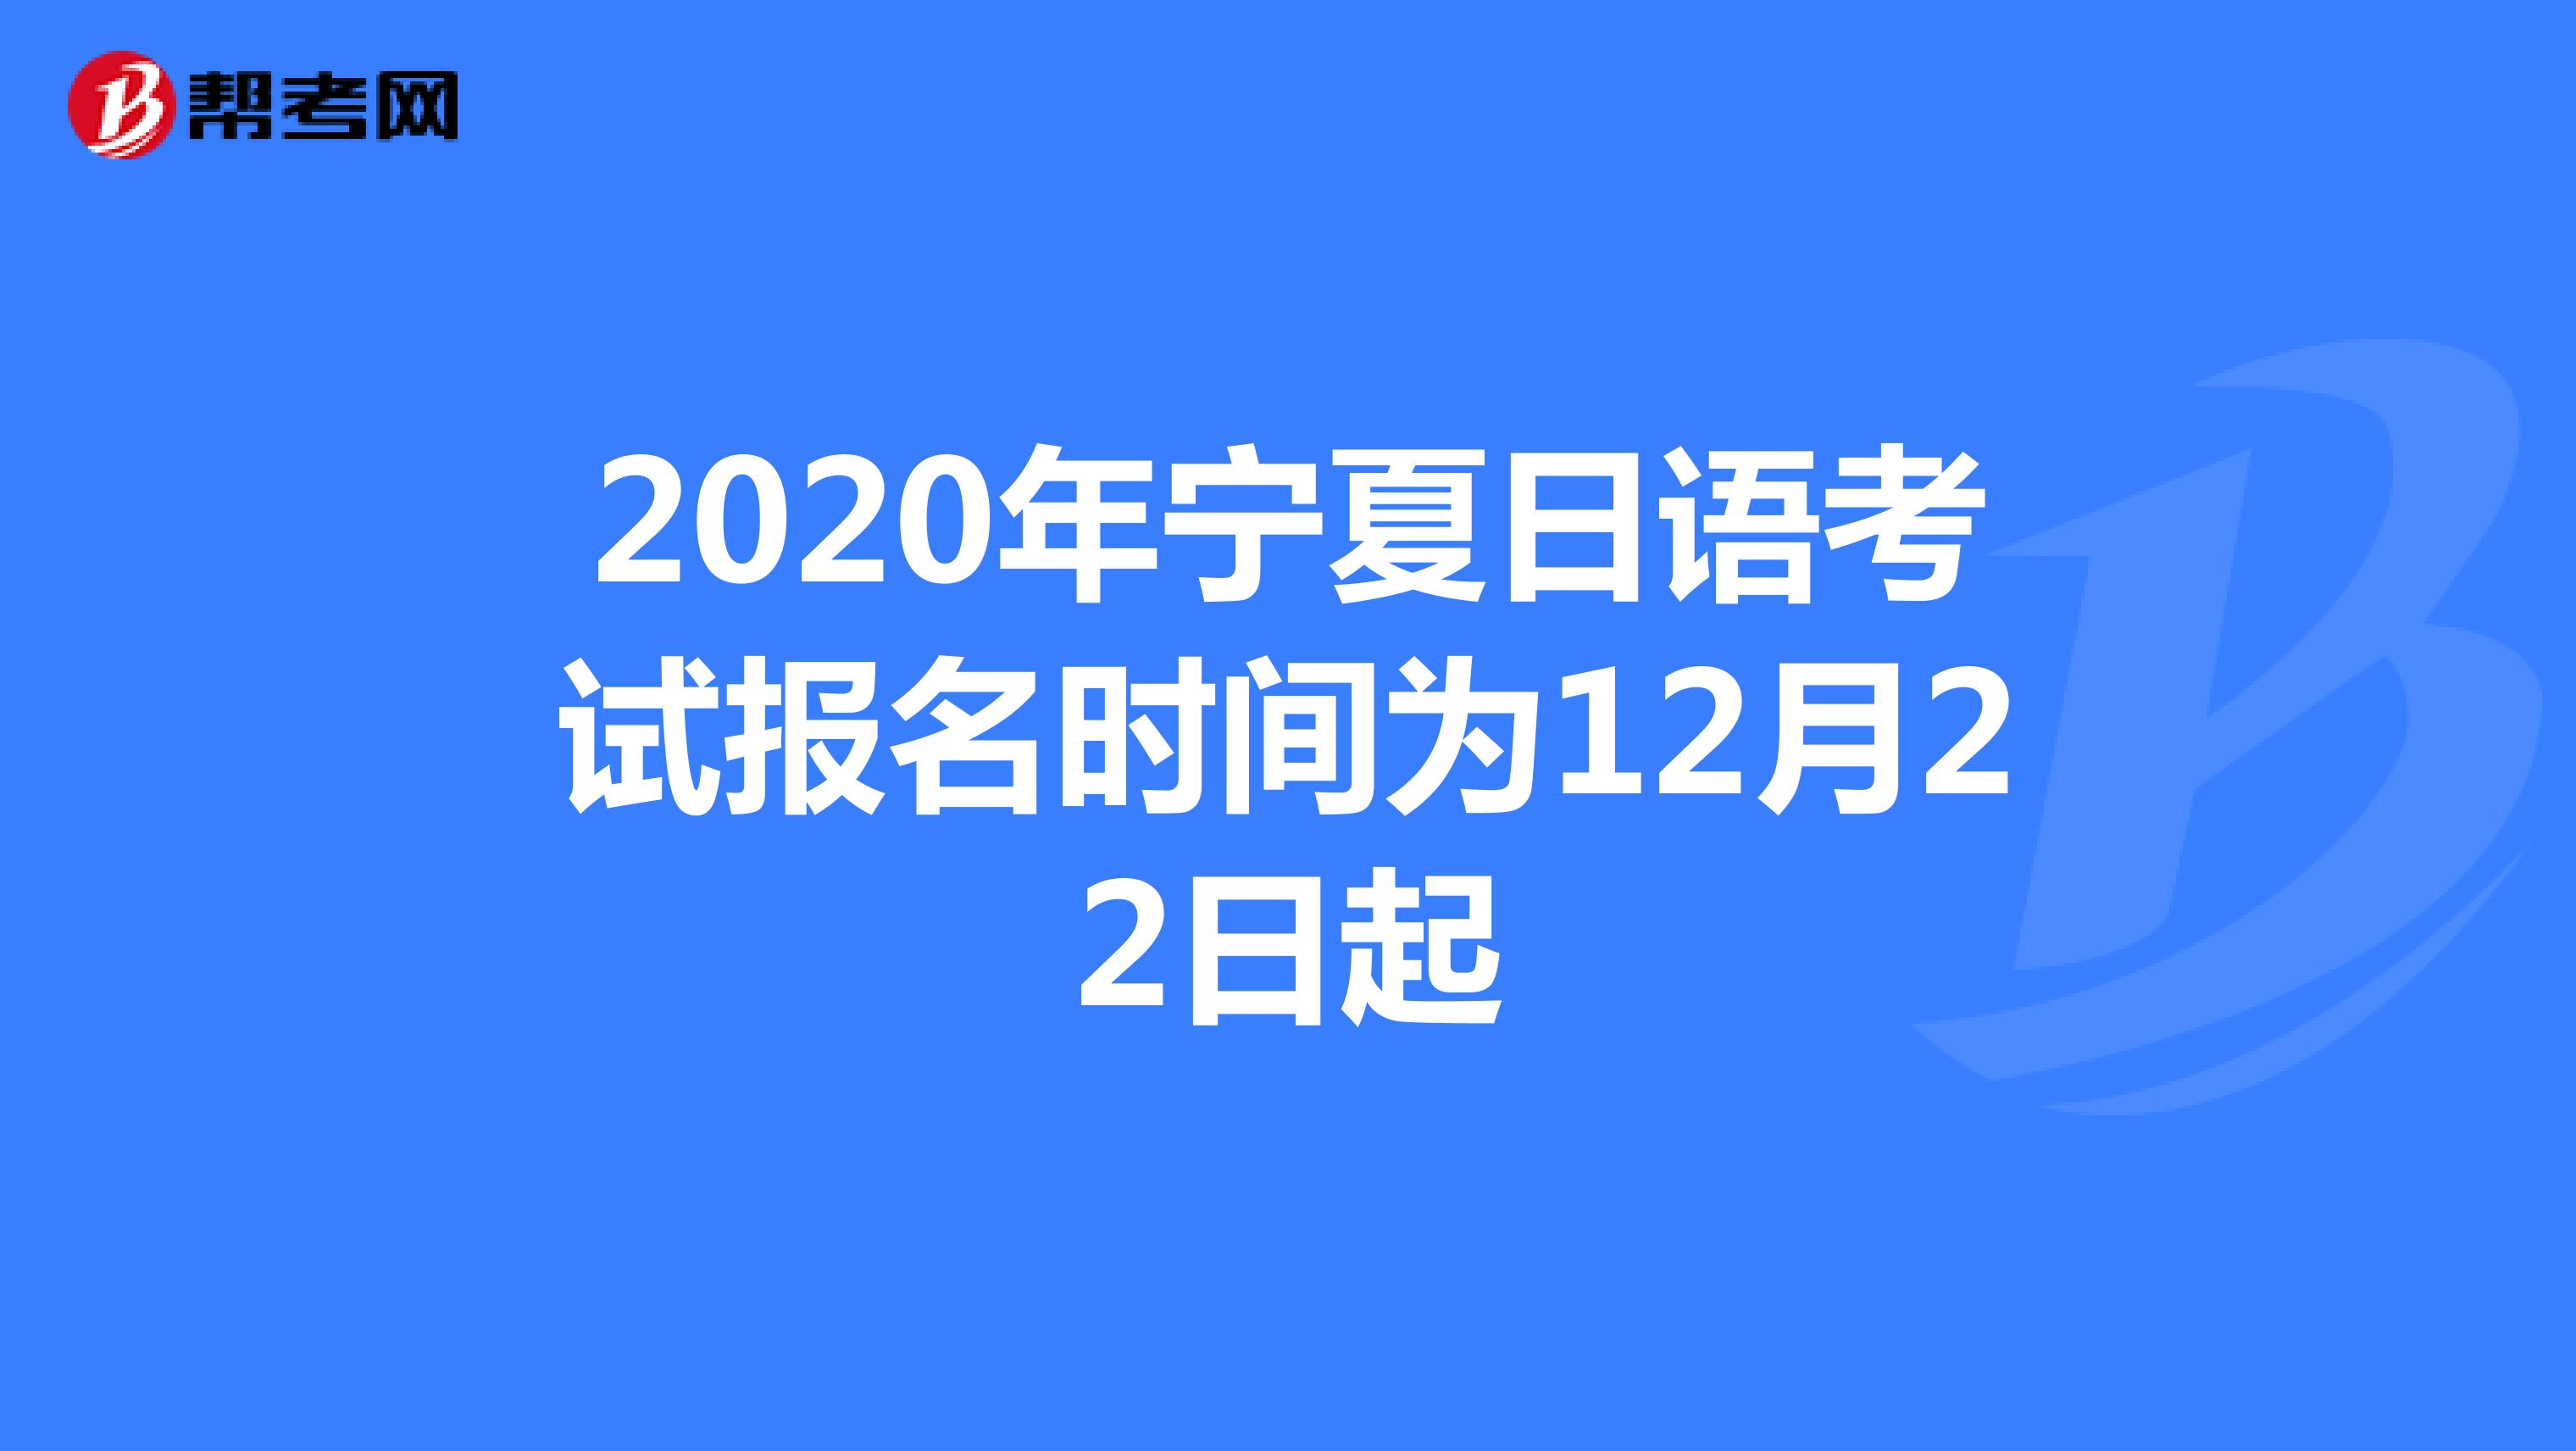 2020年宁夏日语考试报名时间为12月22日起